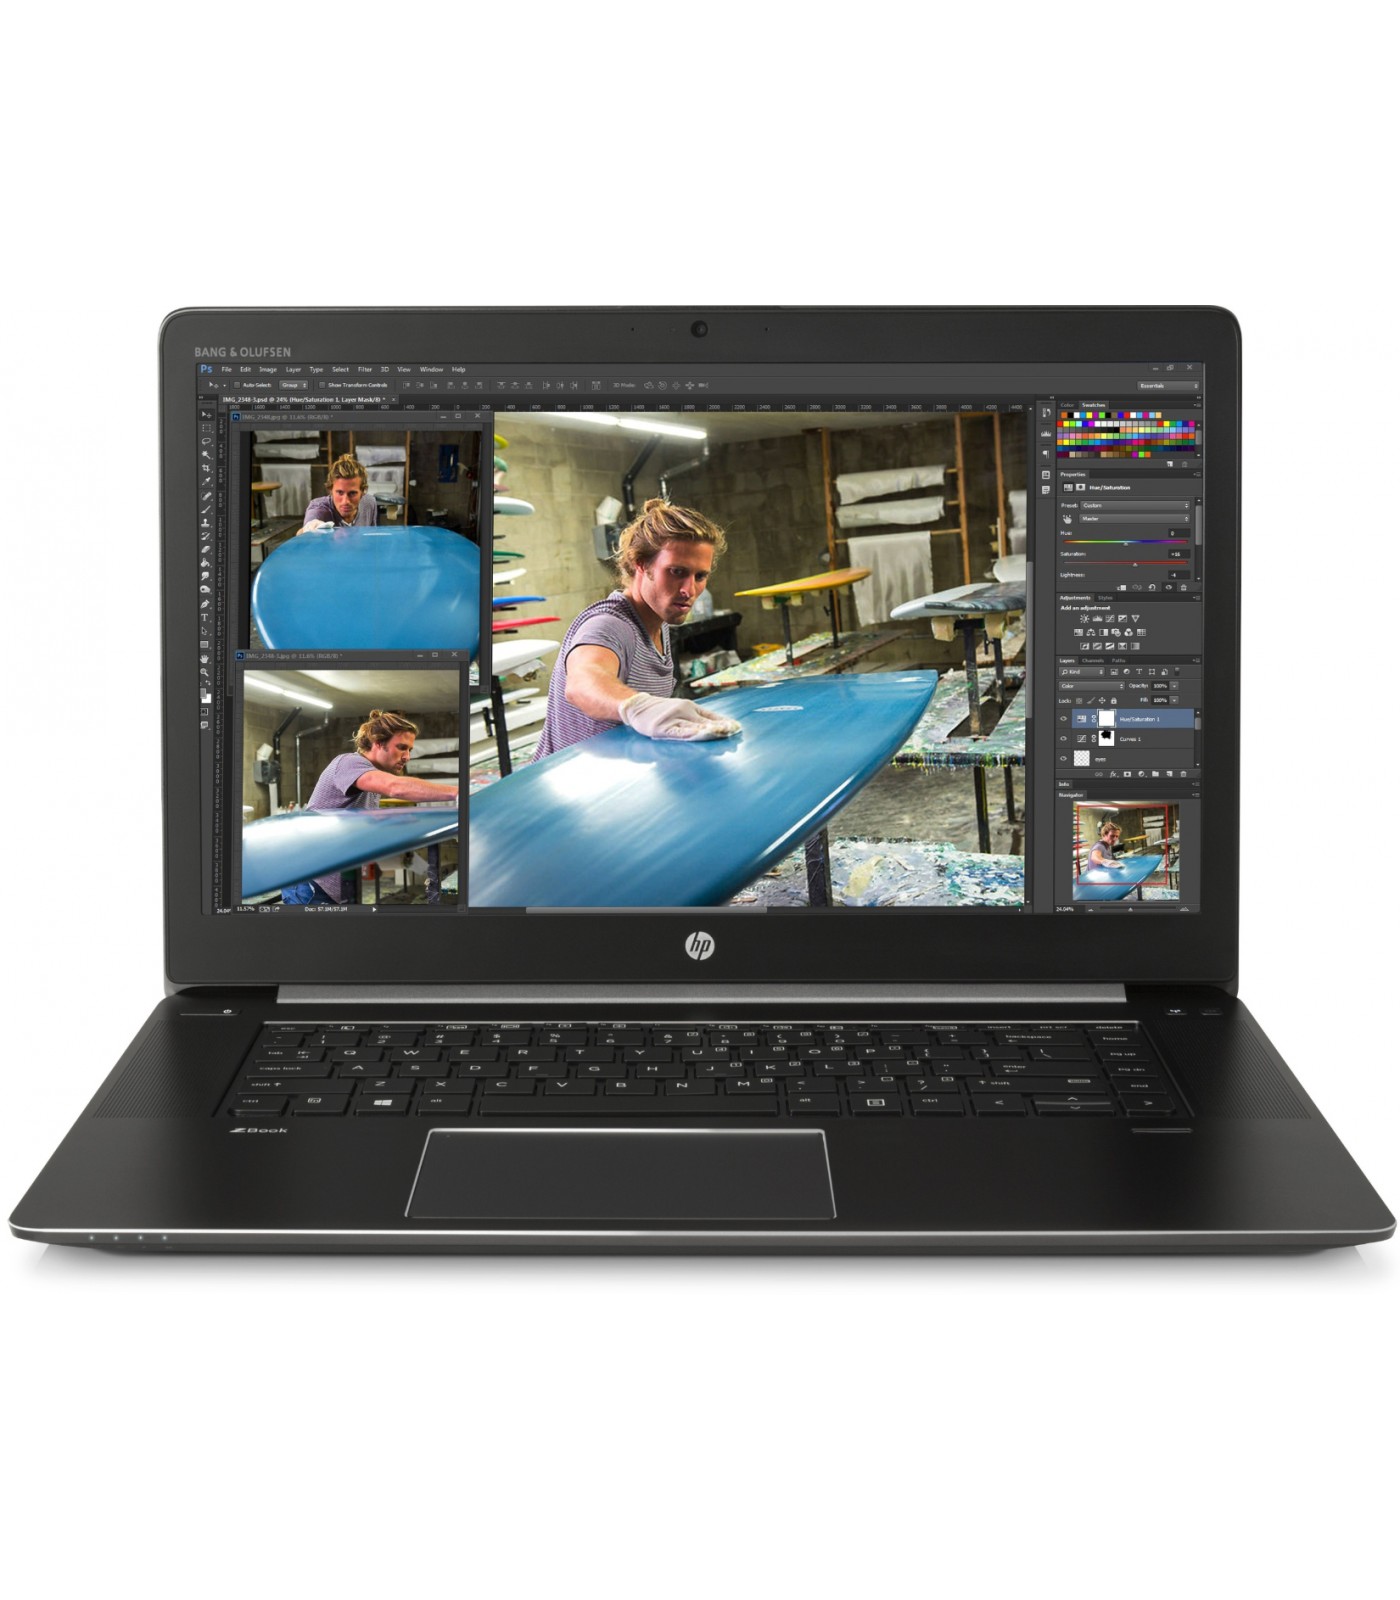 Poleasingowy laptop HP Zbook G3 z procesorem i7 i kartą Nvidia M2200